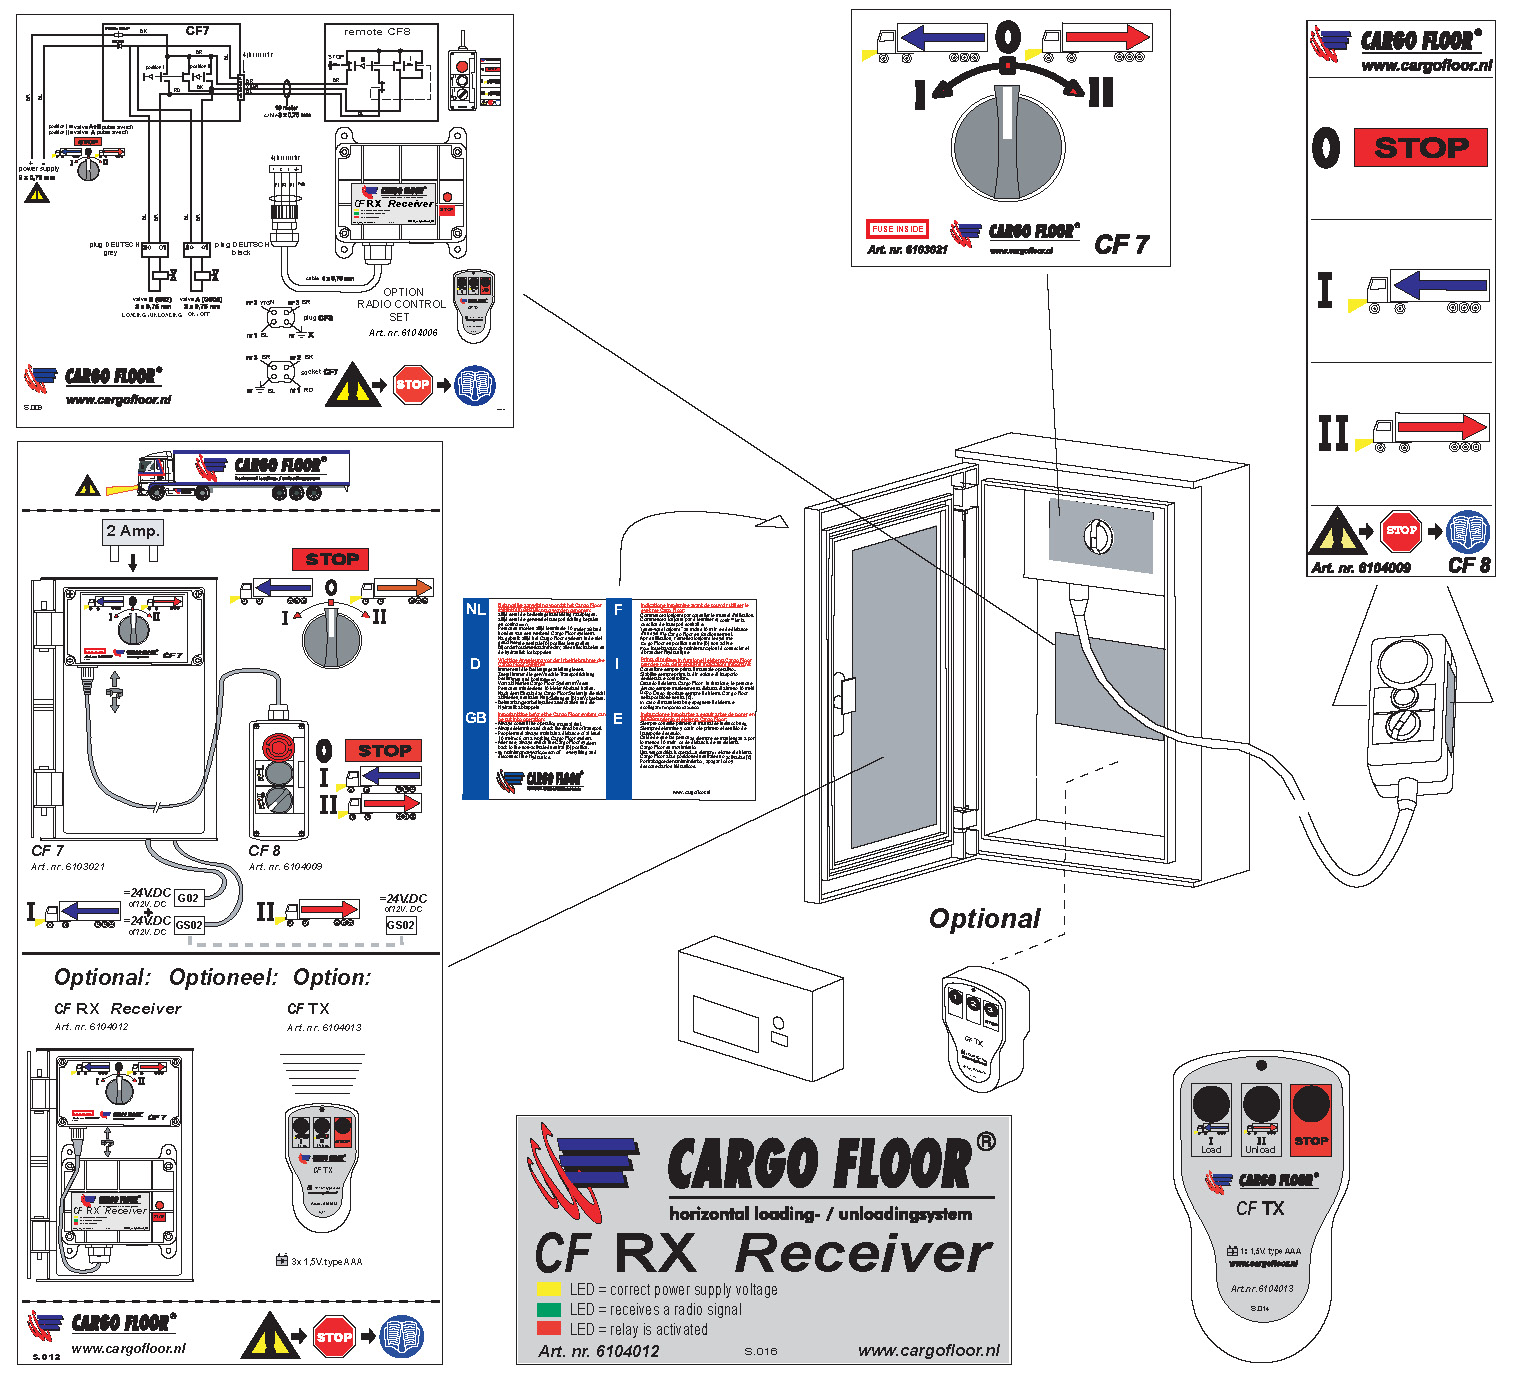 Blz. 6 2x NL Deze stickers, die met de Cargo Floor systemen worden meegeleverd, dienen (of